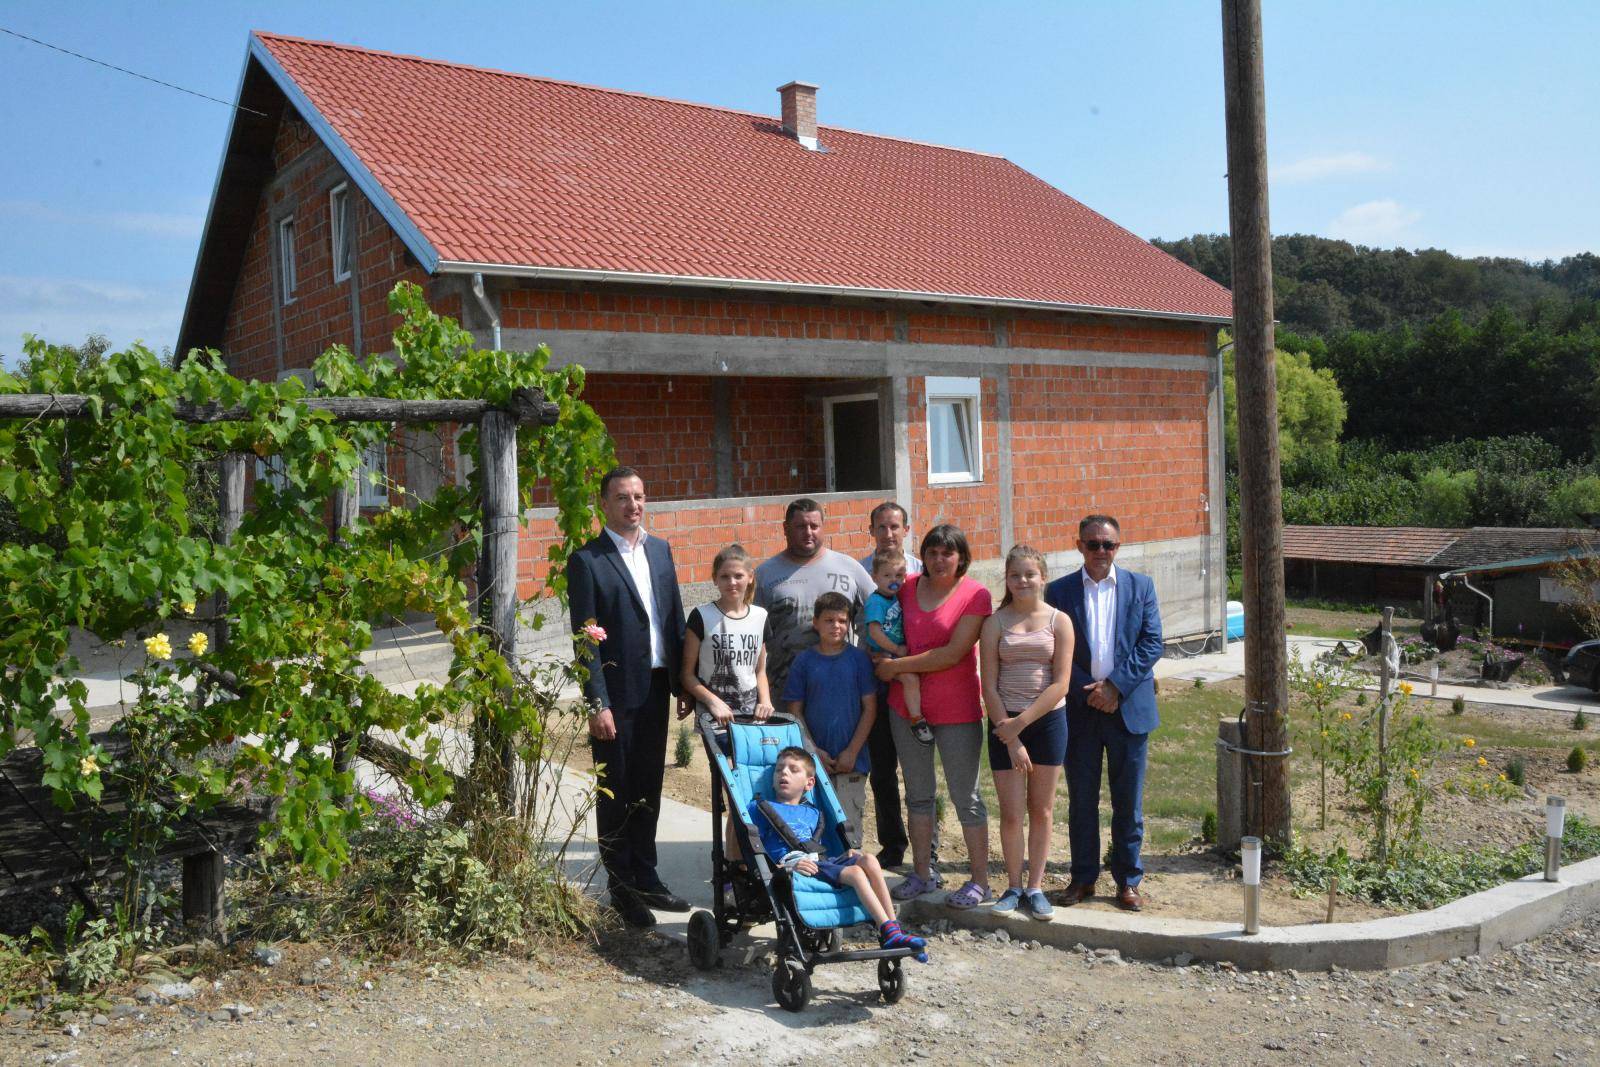 Nova Ljeskovica: SedmeroÄlana obitelj uselila se u novu kuÄu nakon Å¡to je njihva uniÅ¡tena u poÅ¾aru